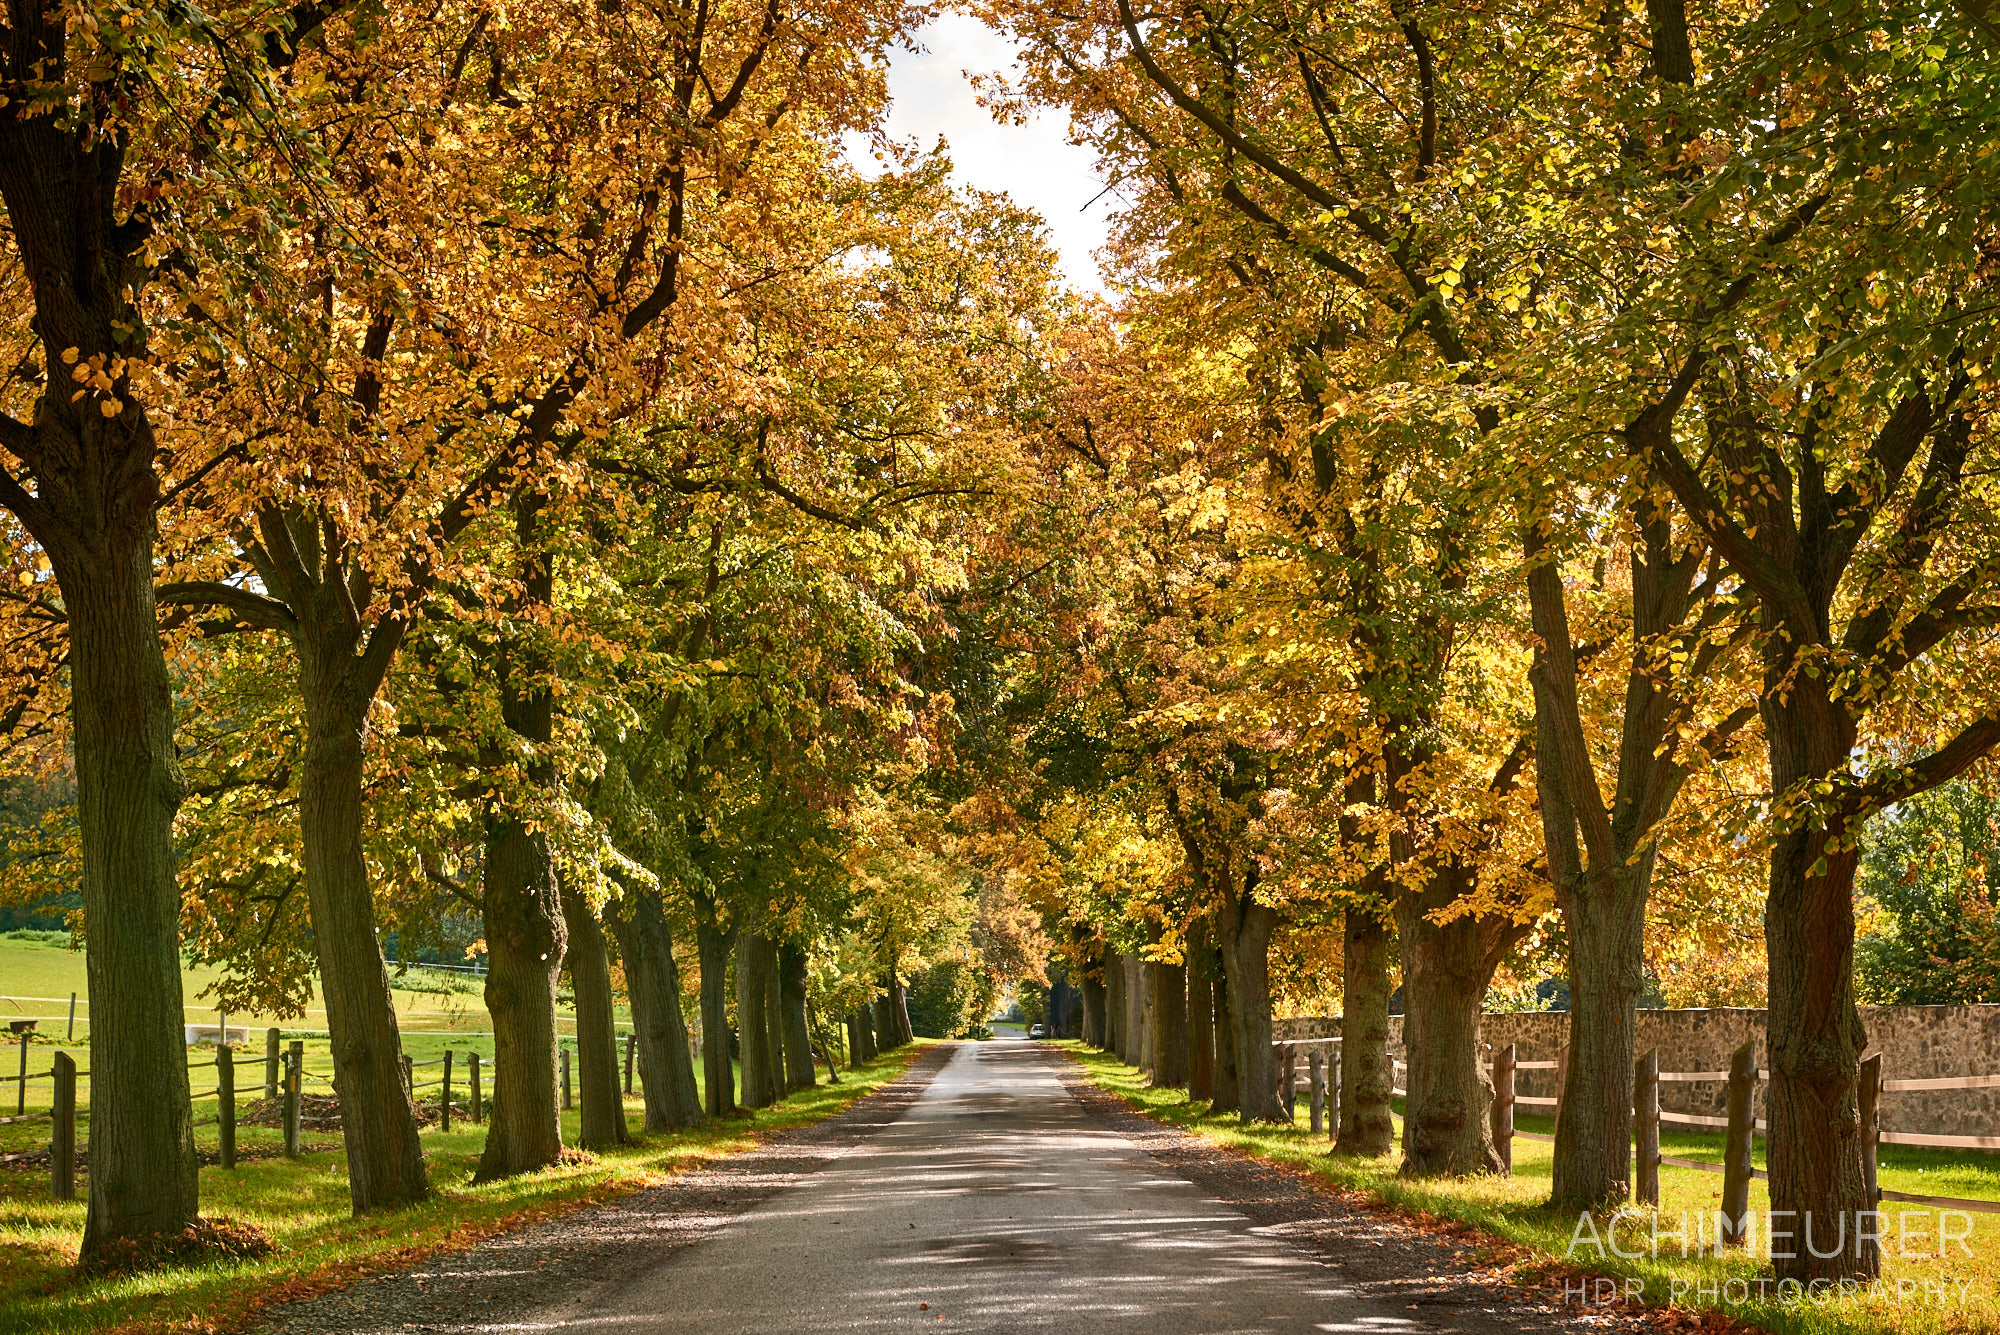 Baum-Alleen, Herbst-Landschaft #nhavo by AchimMeurer.com . 